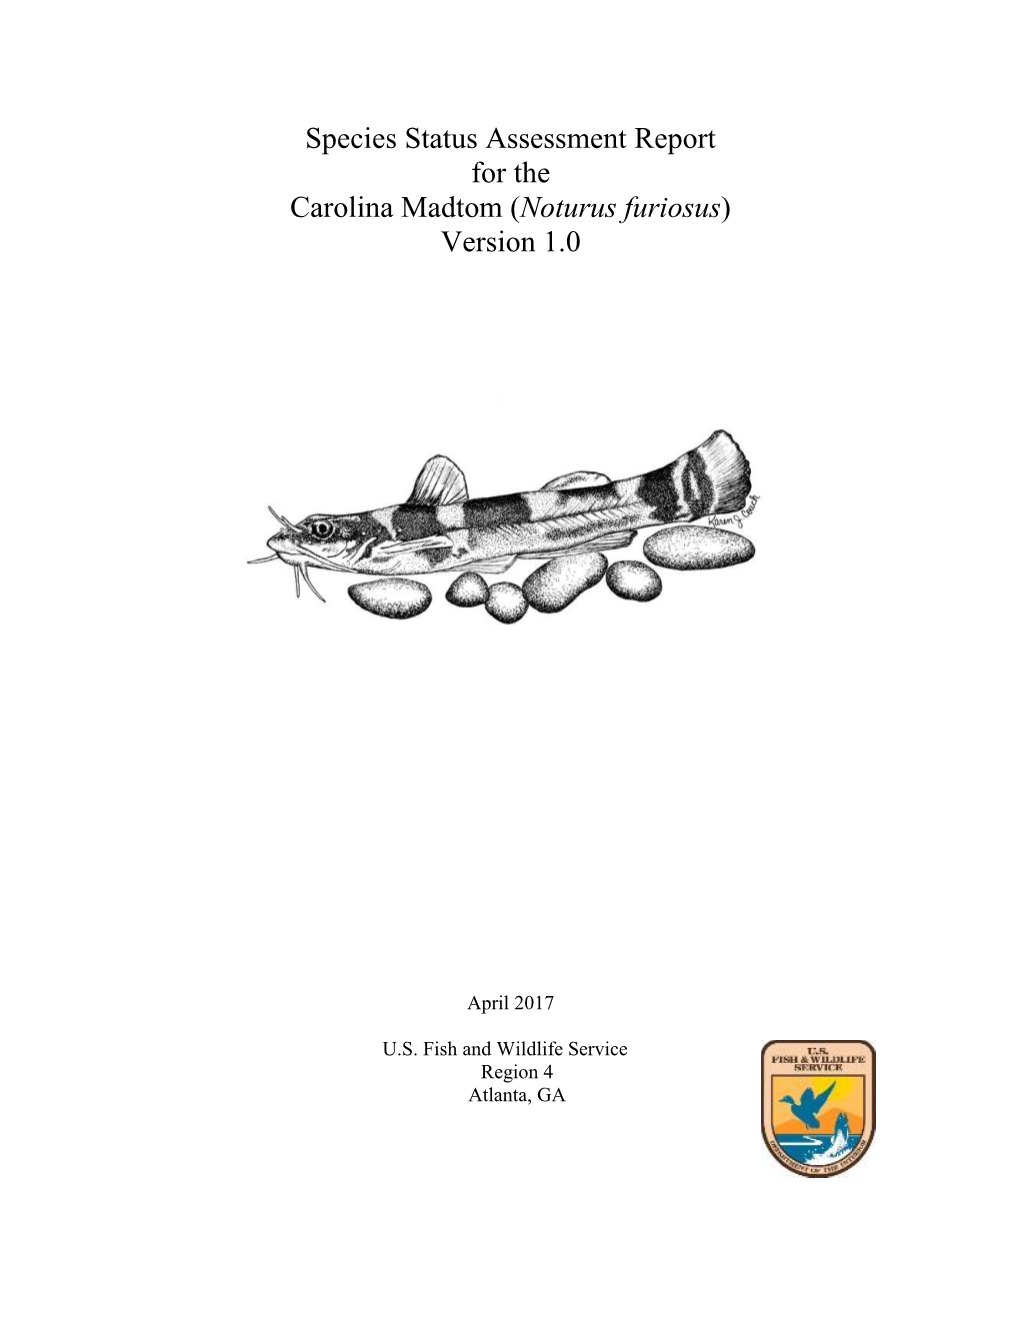 Species Status Assessment Report for the Carolina Madtom (Noturus Furiosus) Version 1.0